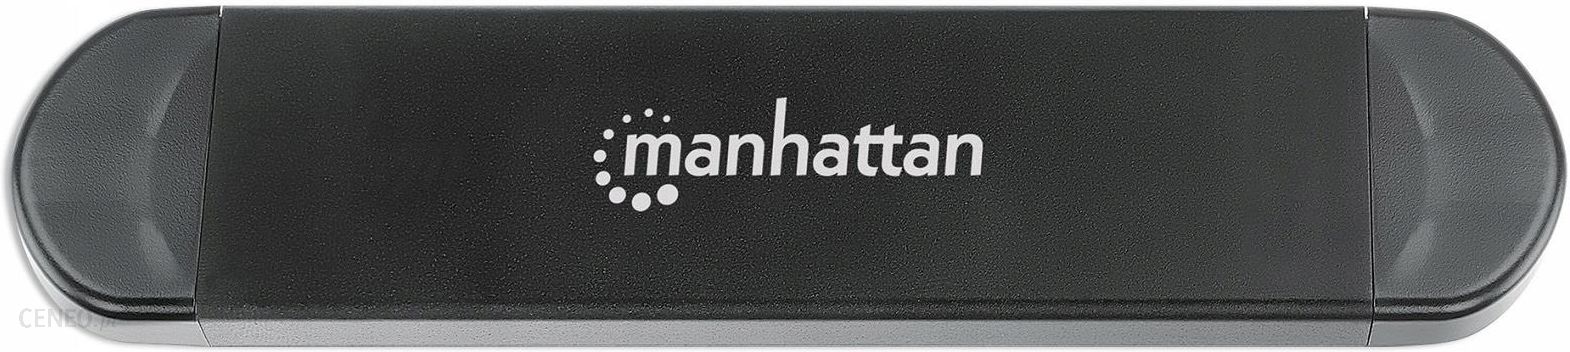 Manhattan M.2 NVMe and SATA SSD USB Enclosure (130639)